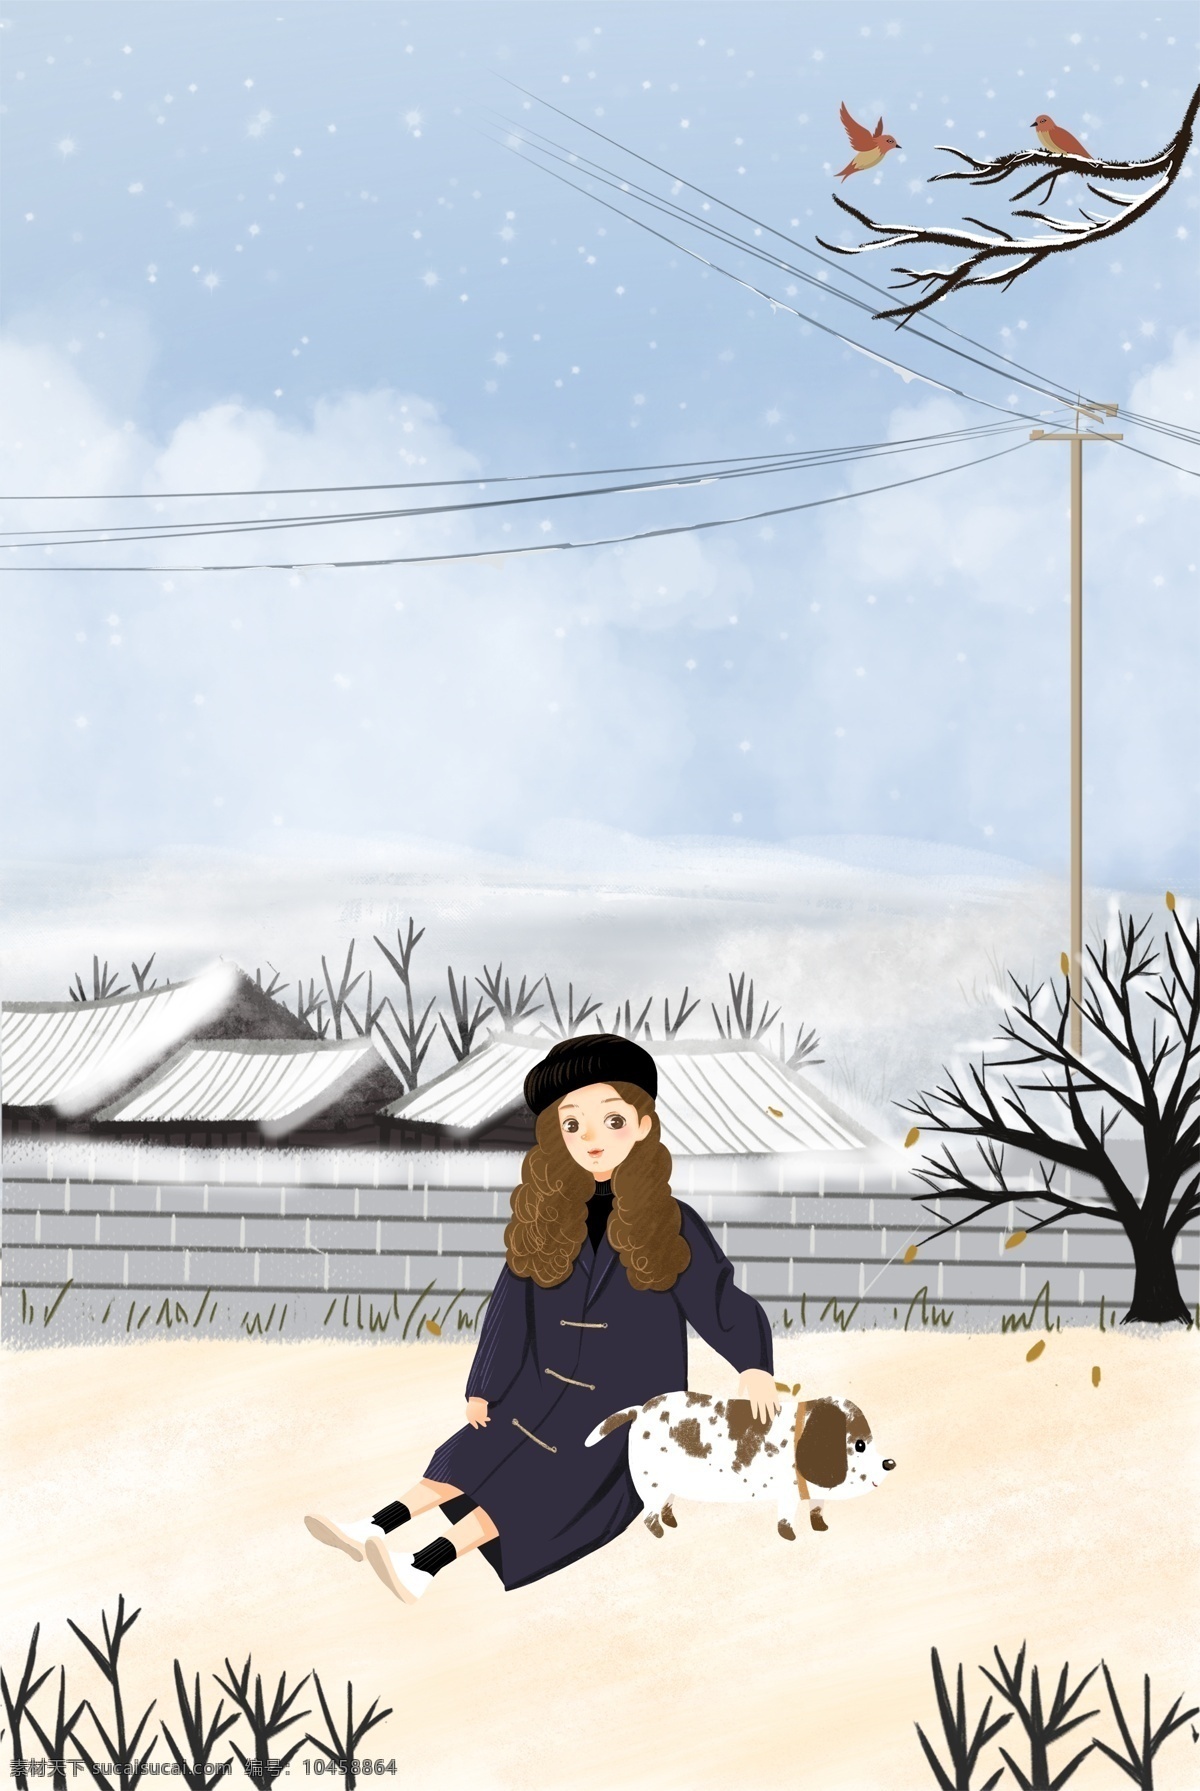 二十四节气 冬至 户外 时尚 女孩 传统节气 服装 动物 雪地 插画风 促销海报